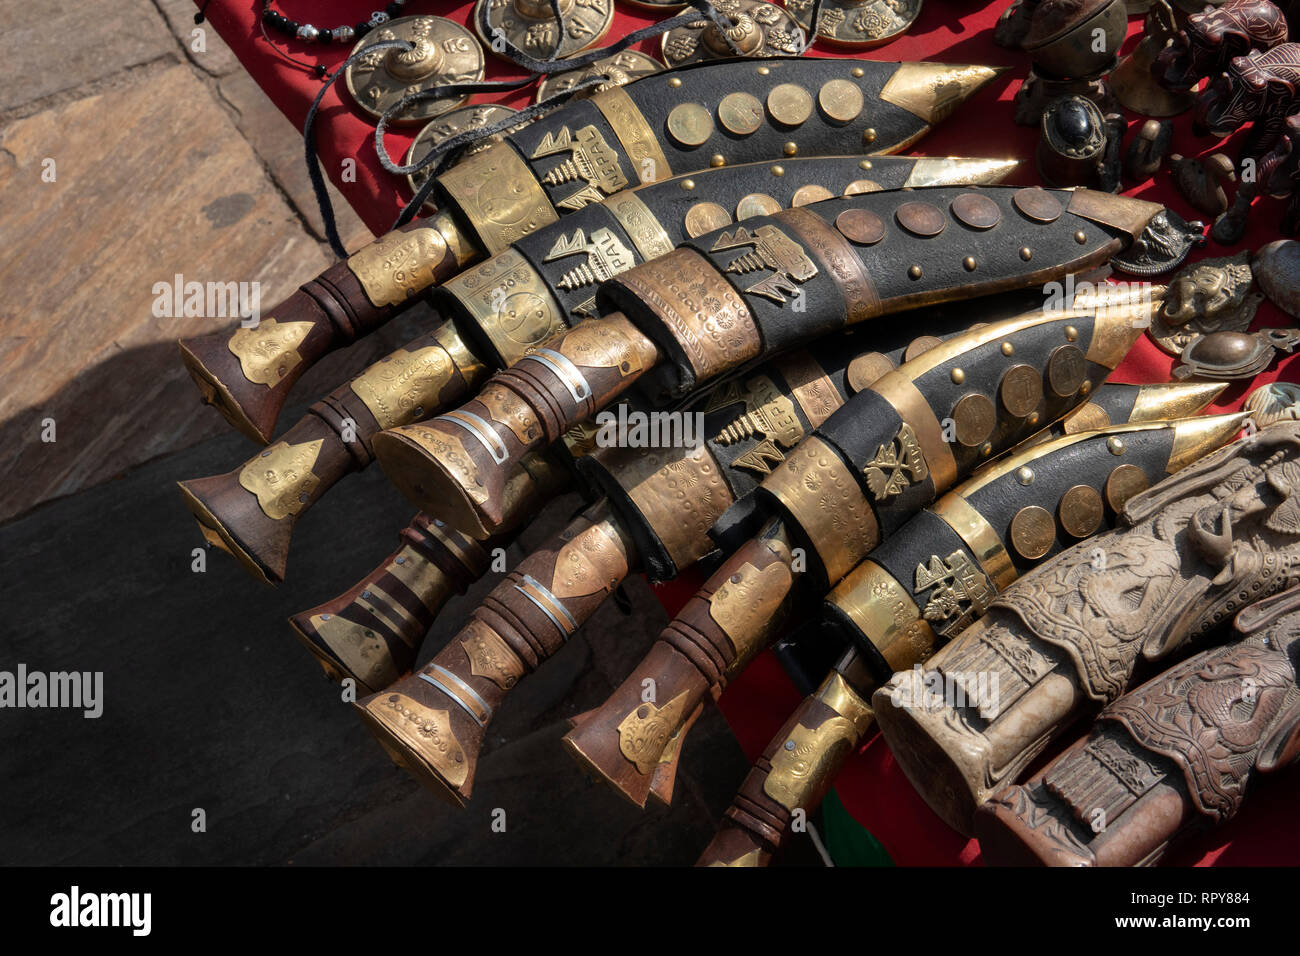 Nepal, Kathmandu, Swayambhunath Temple, antique and modern reproduction Kukri knives for sale Stock Photo